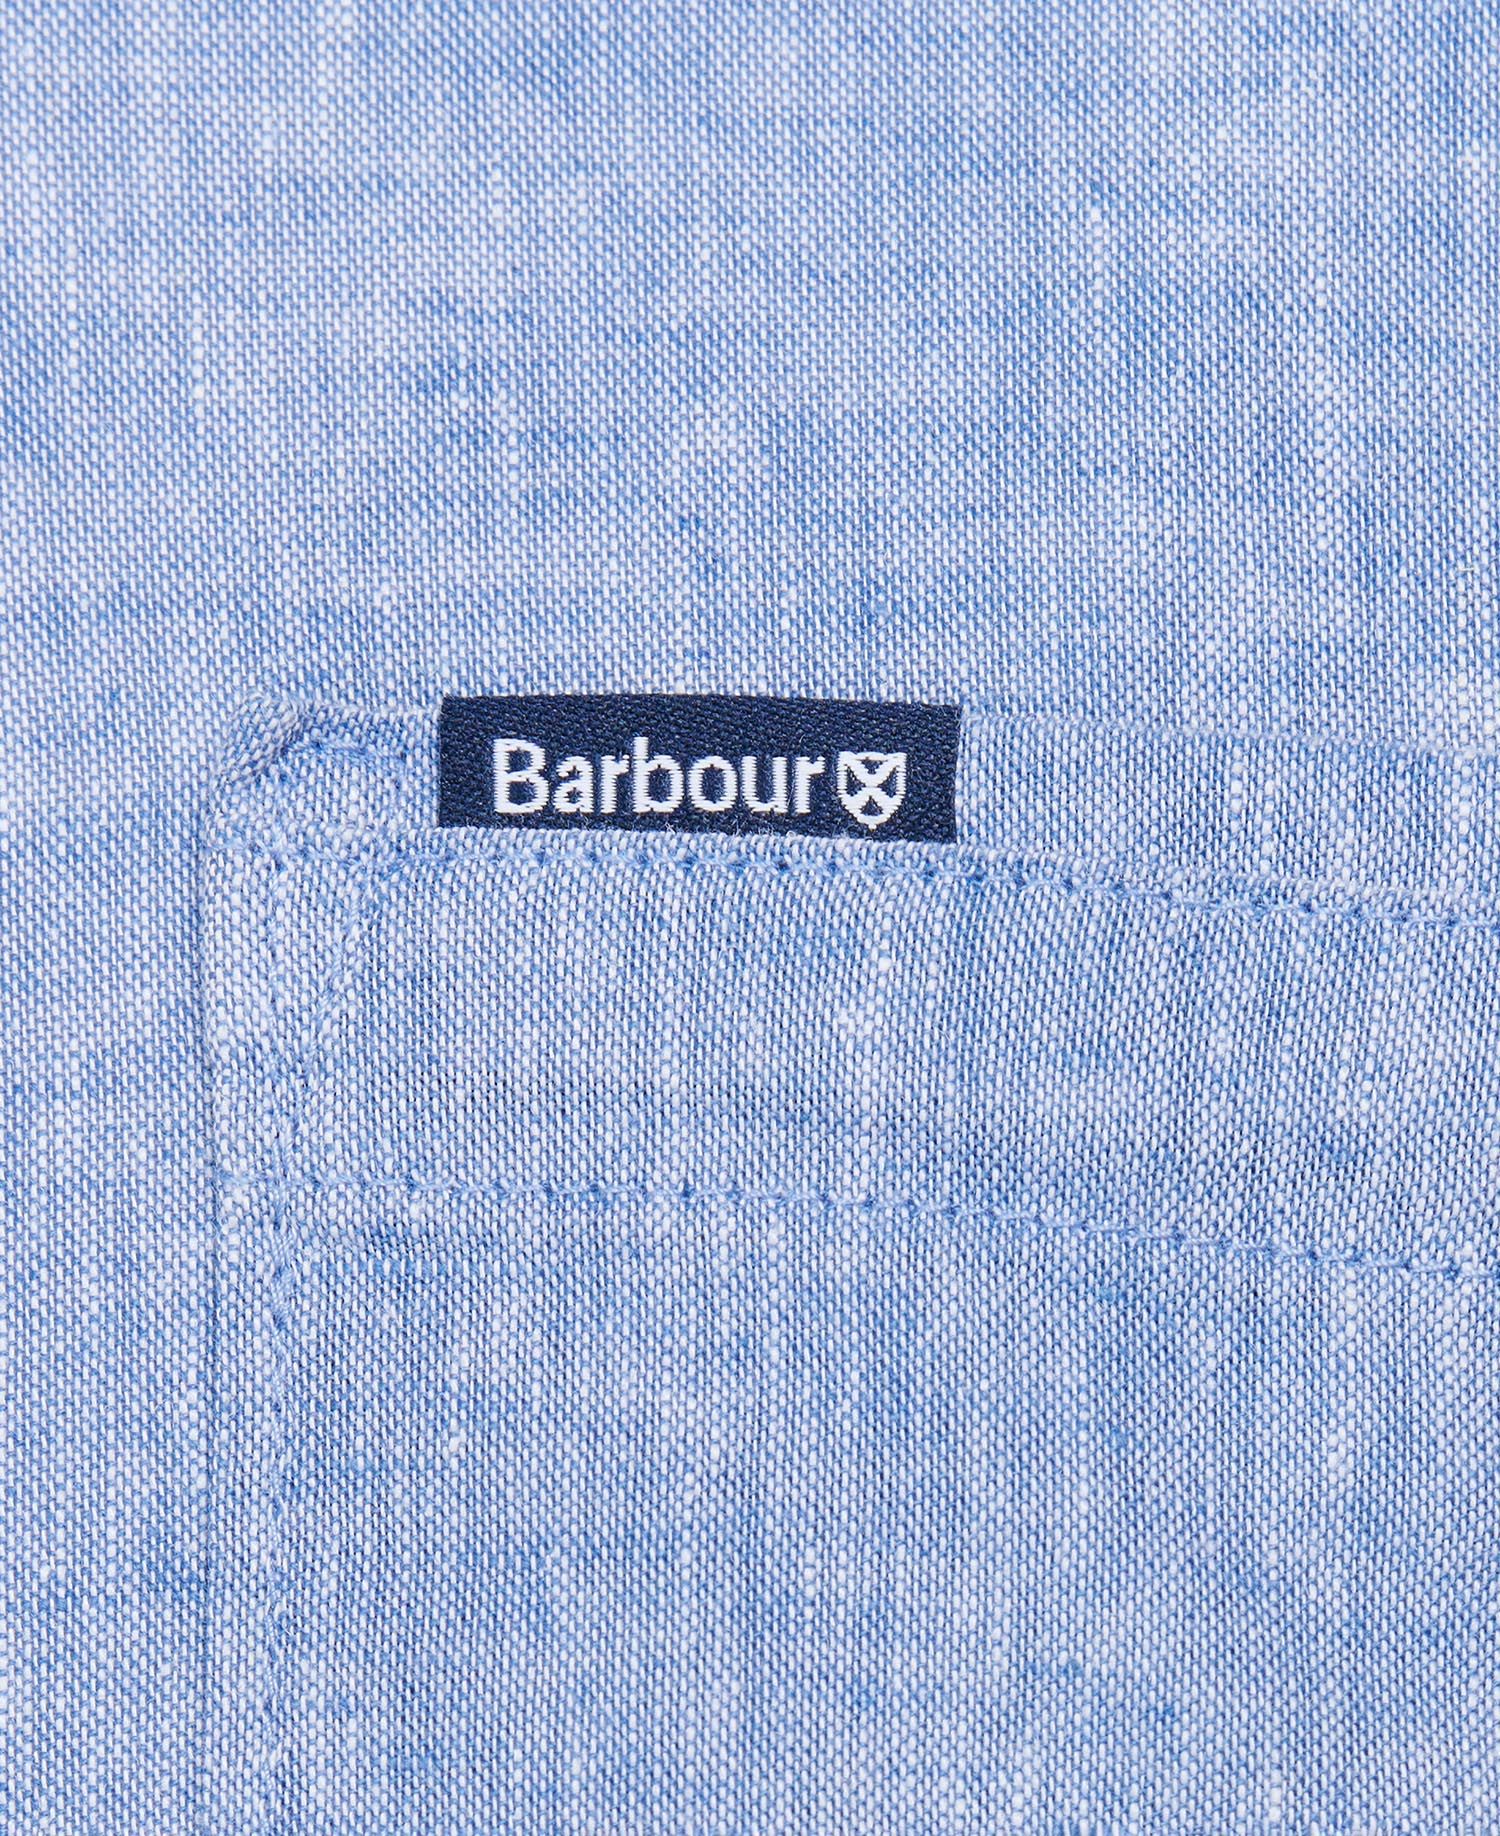 Barbour Linen Button Down Shirt Light Blue Men